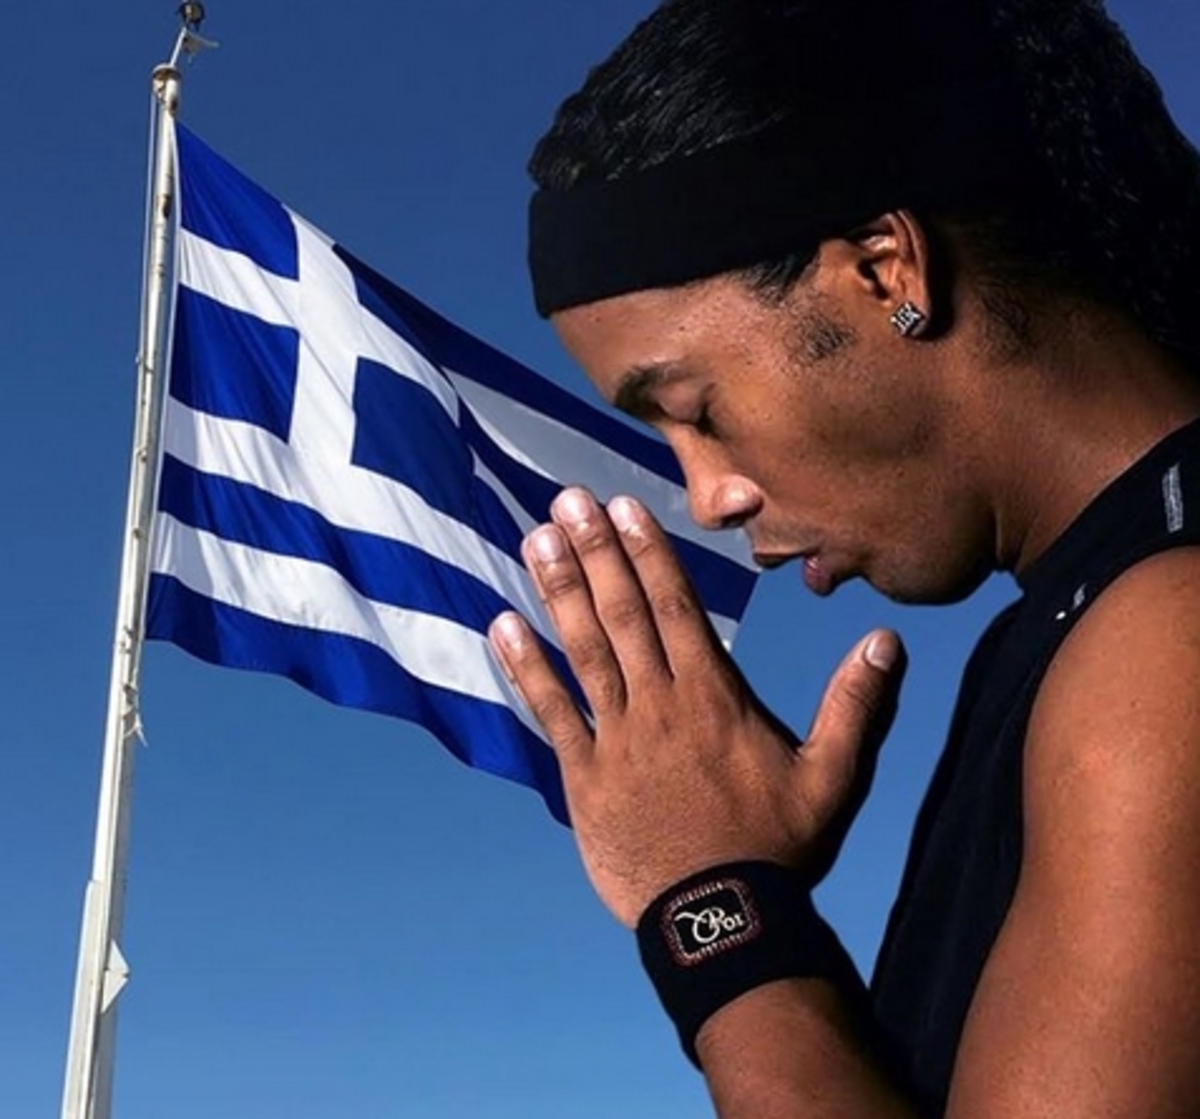 Προσεύχεται και ο Ροναλντίνιο! “Πονάω για την Ελλάδα – Κουράγιο αδέρφια μου” [pic]